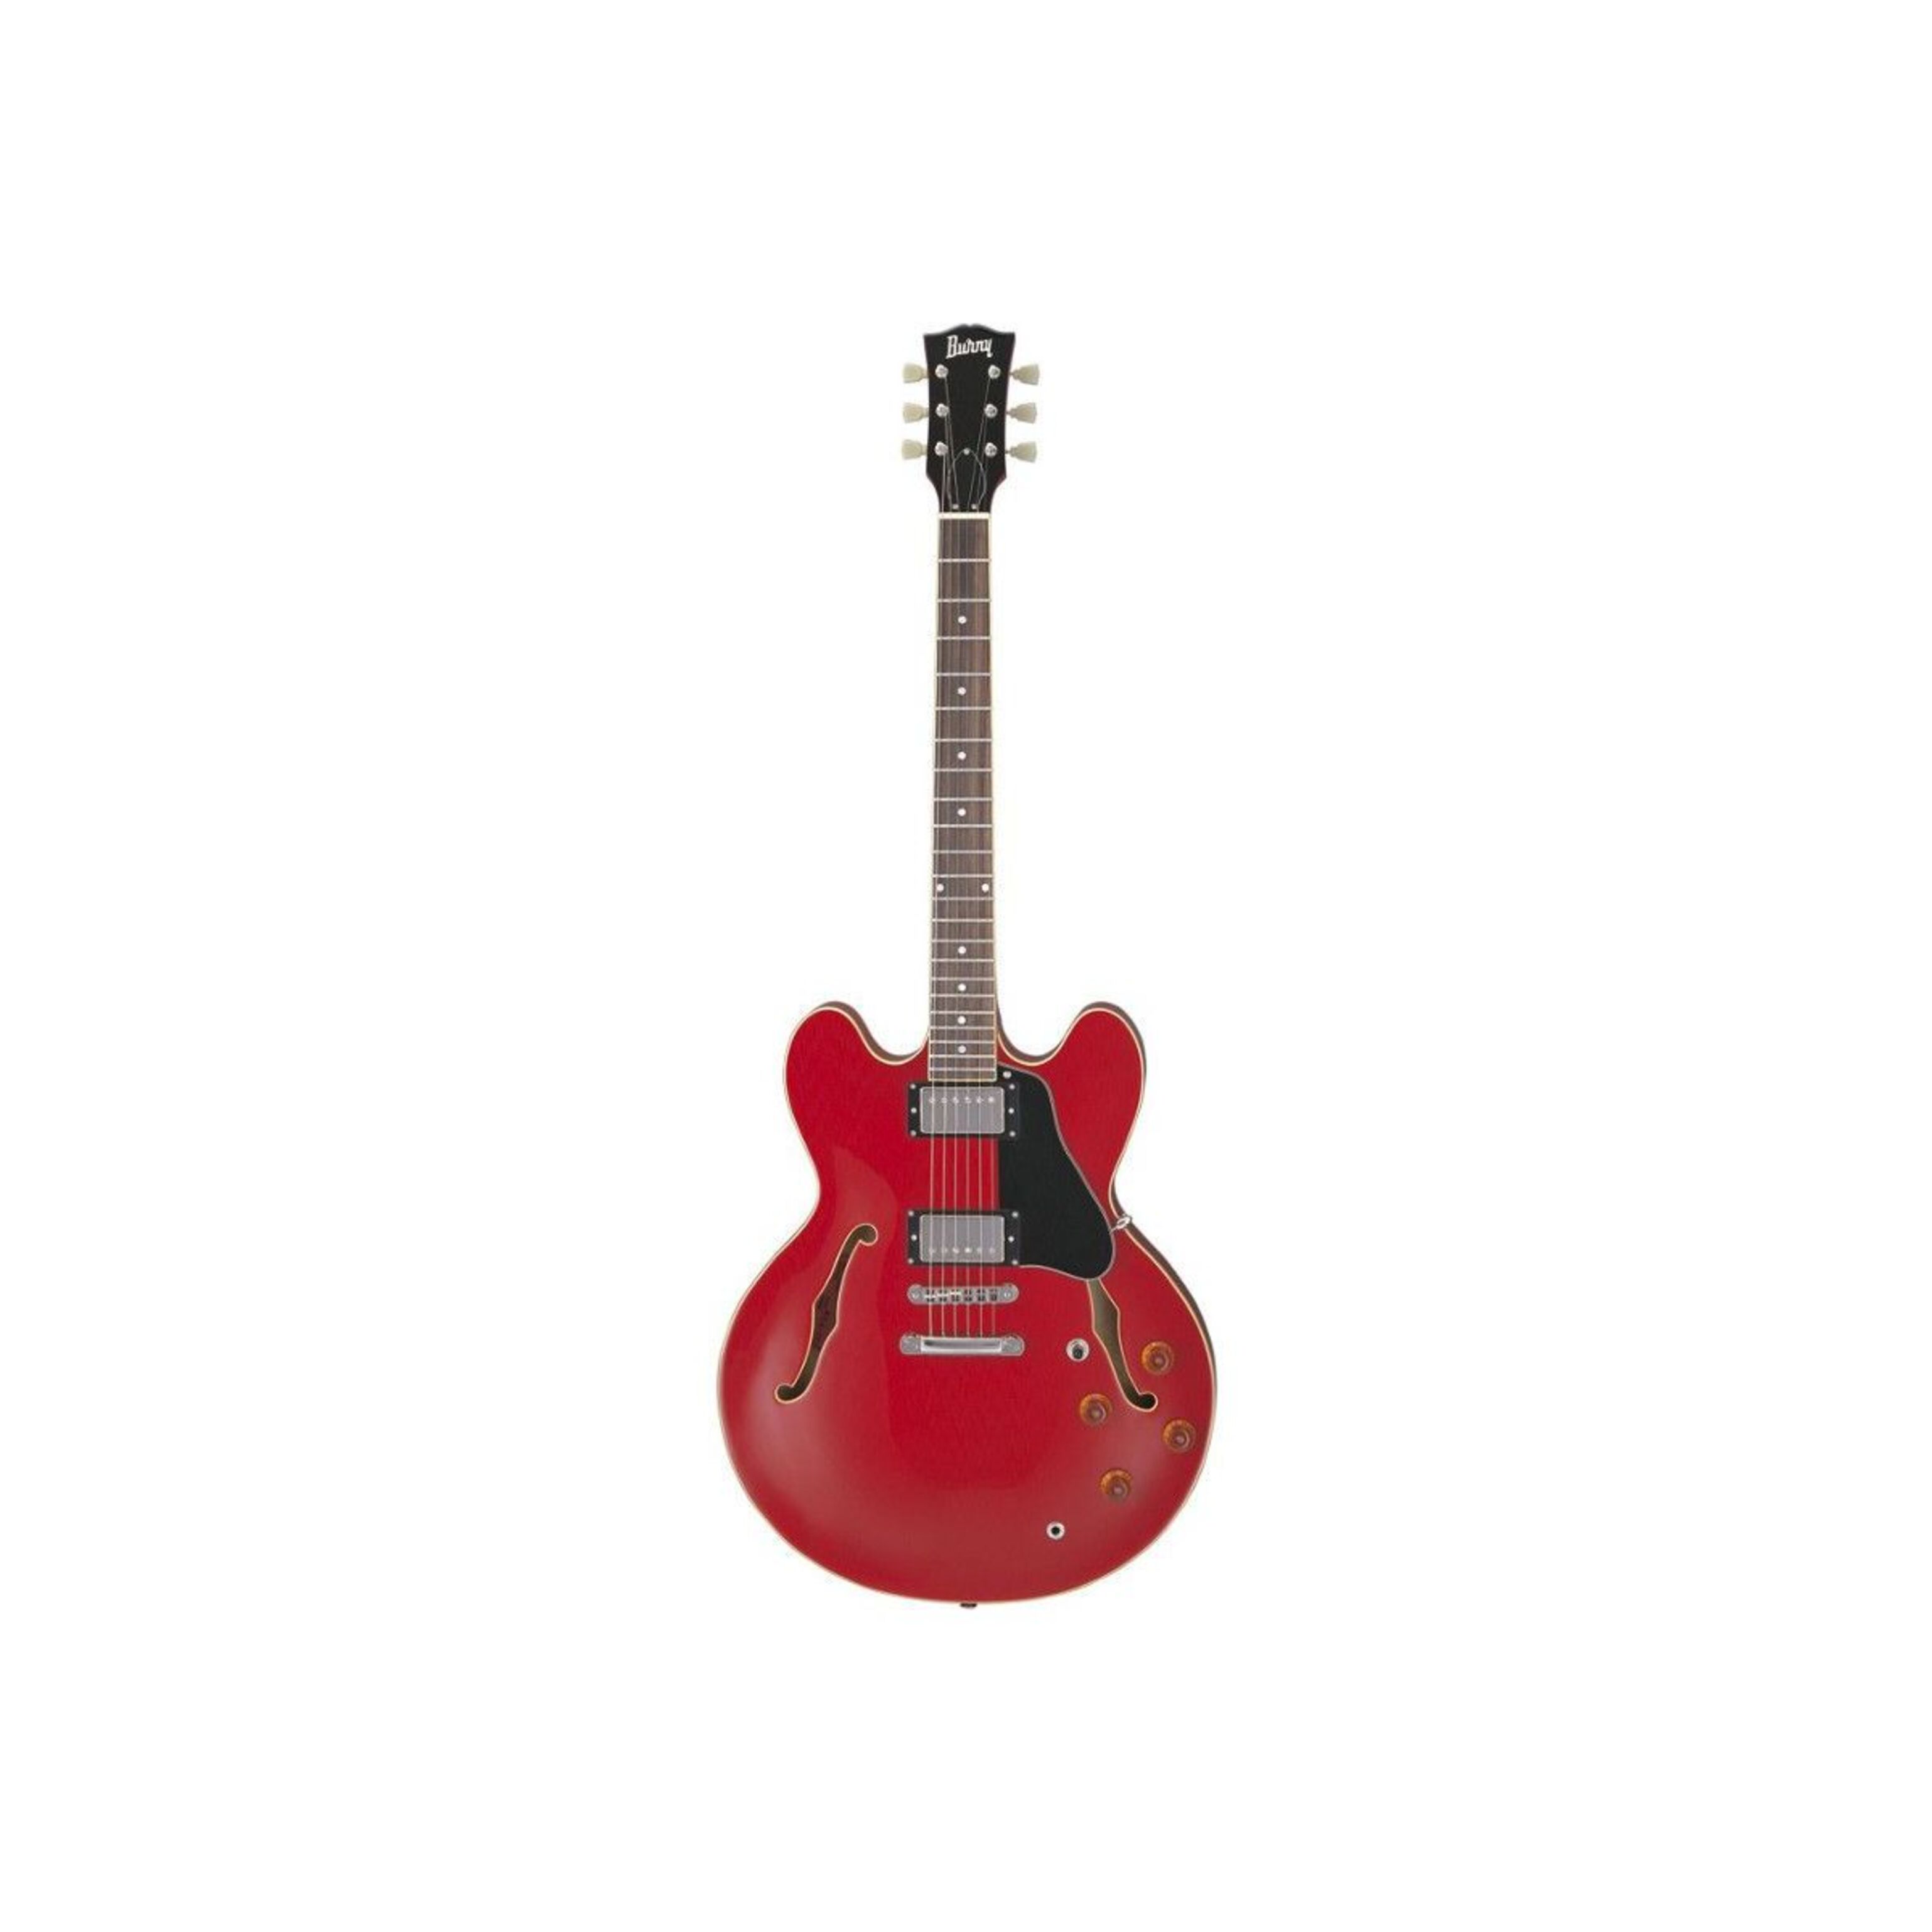 Полуакустические гитары Burny RSA70 CR (кейс в комплекте) полуакустические гитары burny rsa70 bs кейс в комплекте